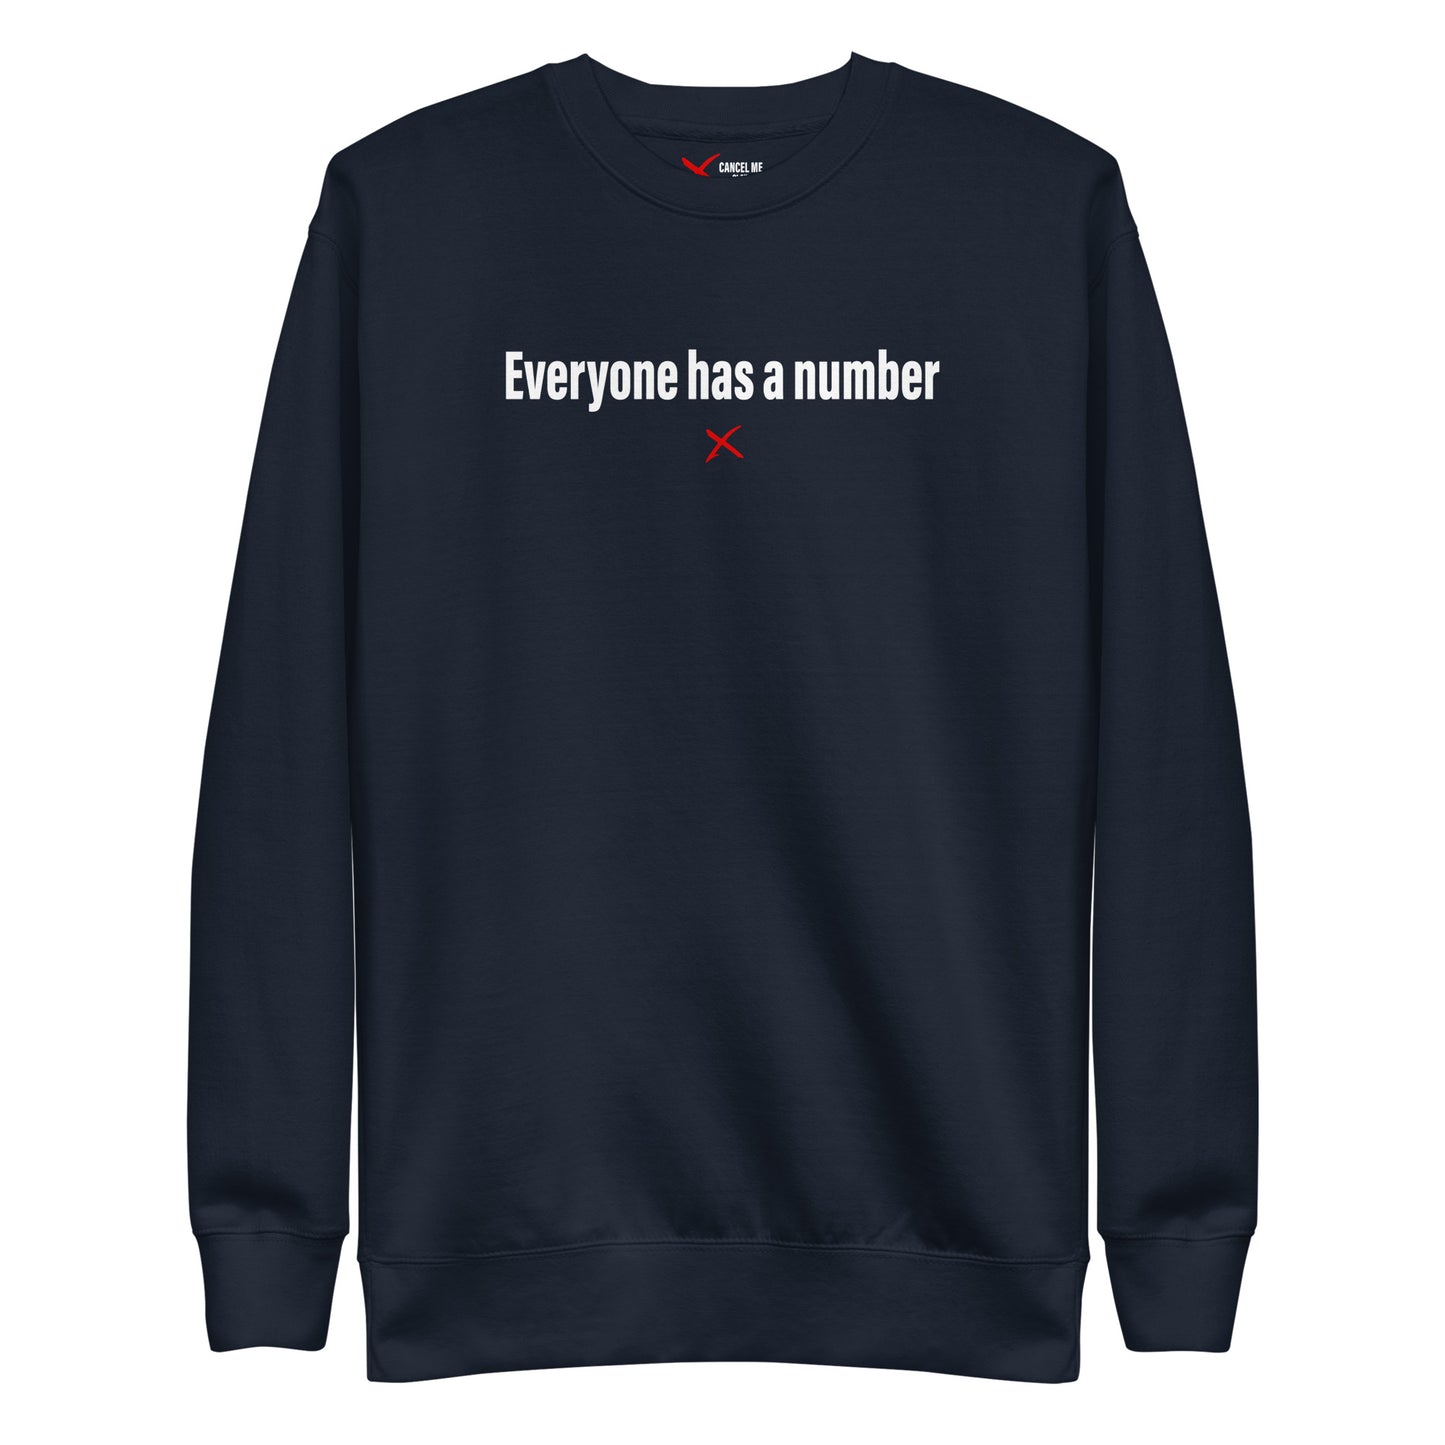 Everyone has a number - Sweatshirt